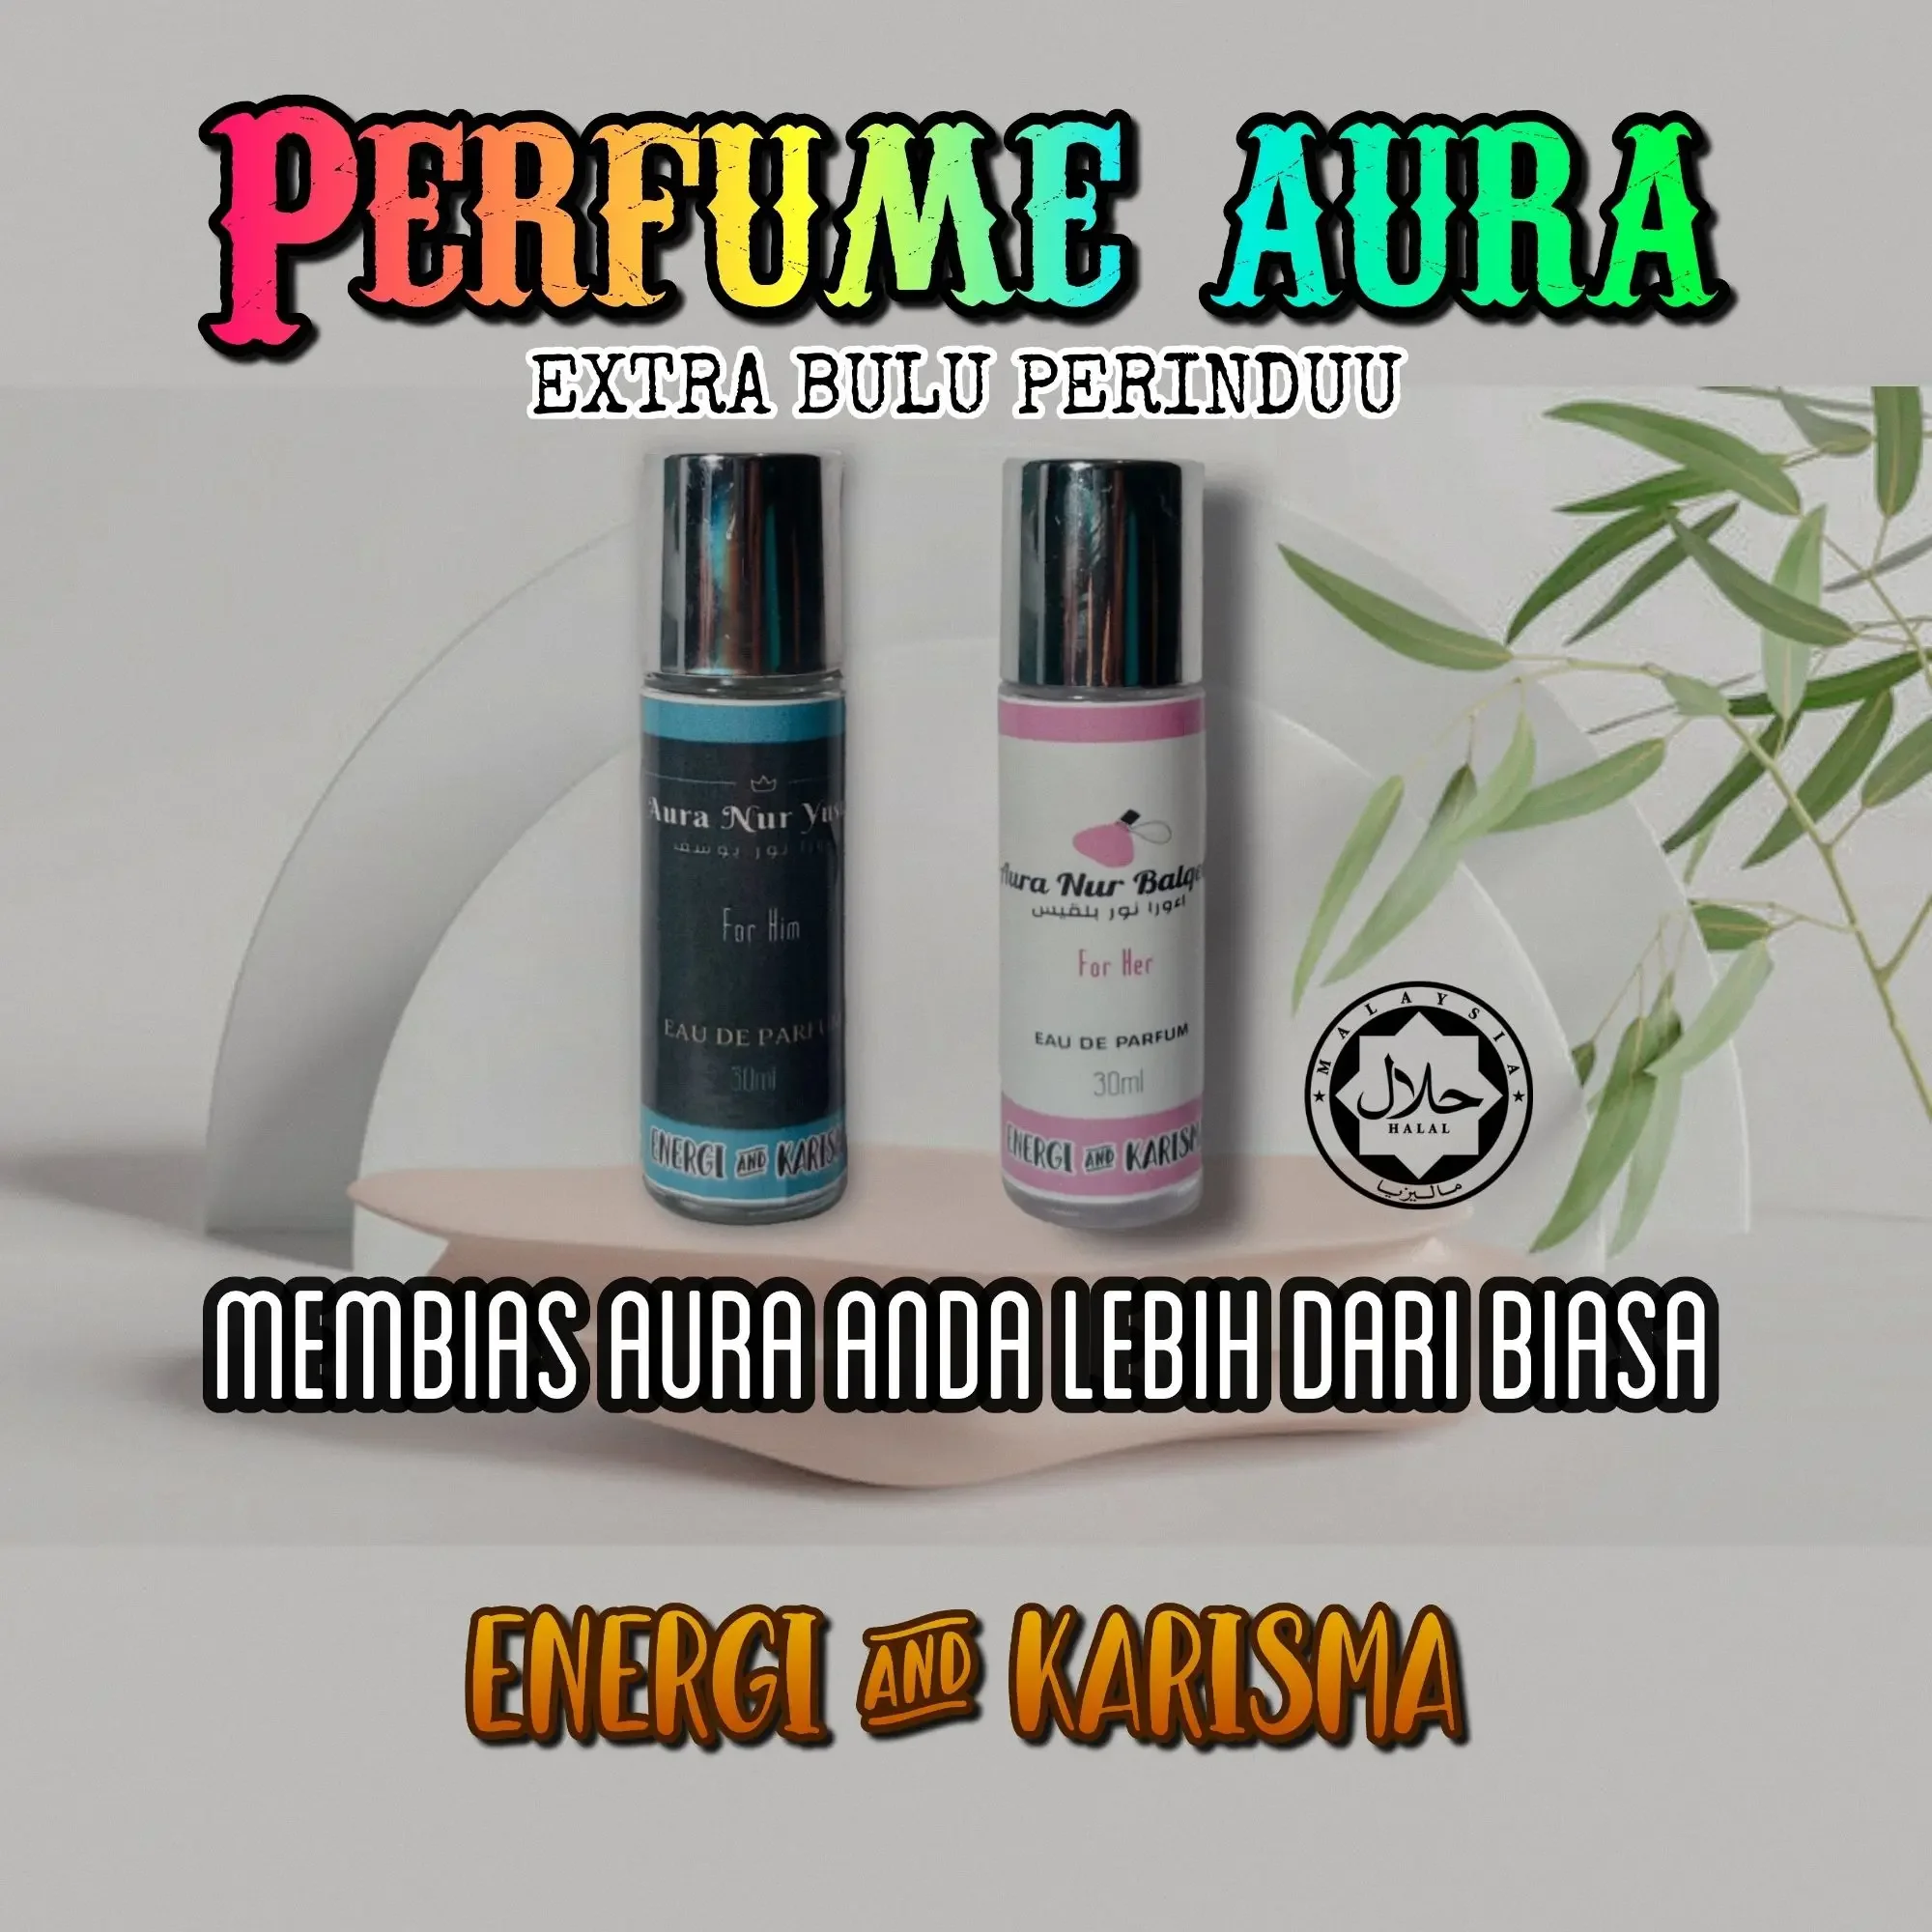 Perfume aura perindu bamboo (for him)untuk lelaki